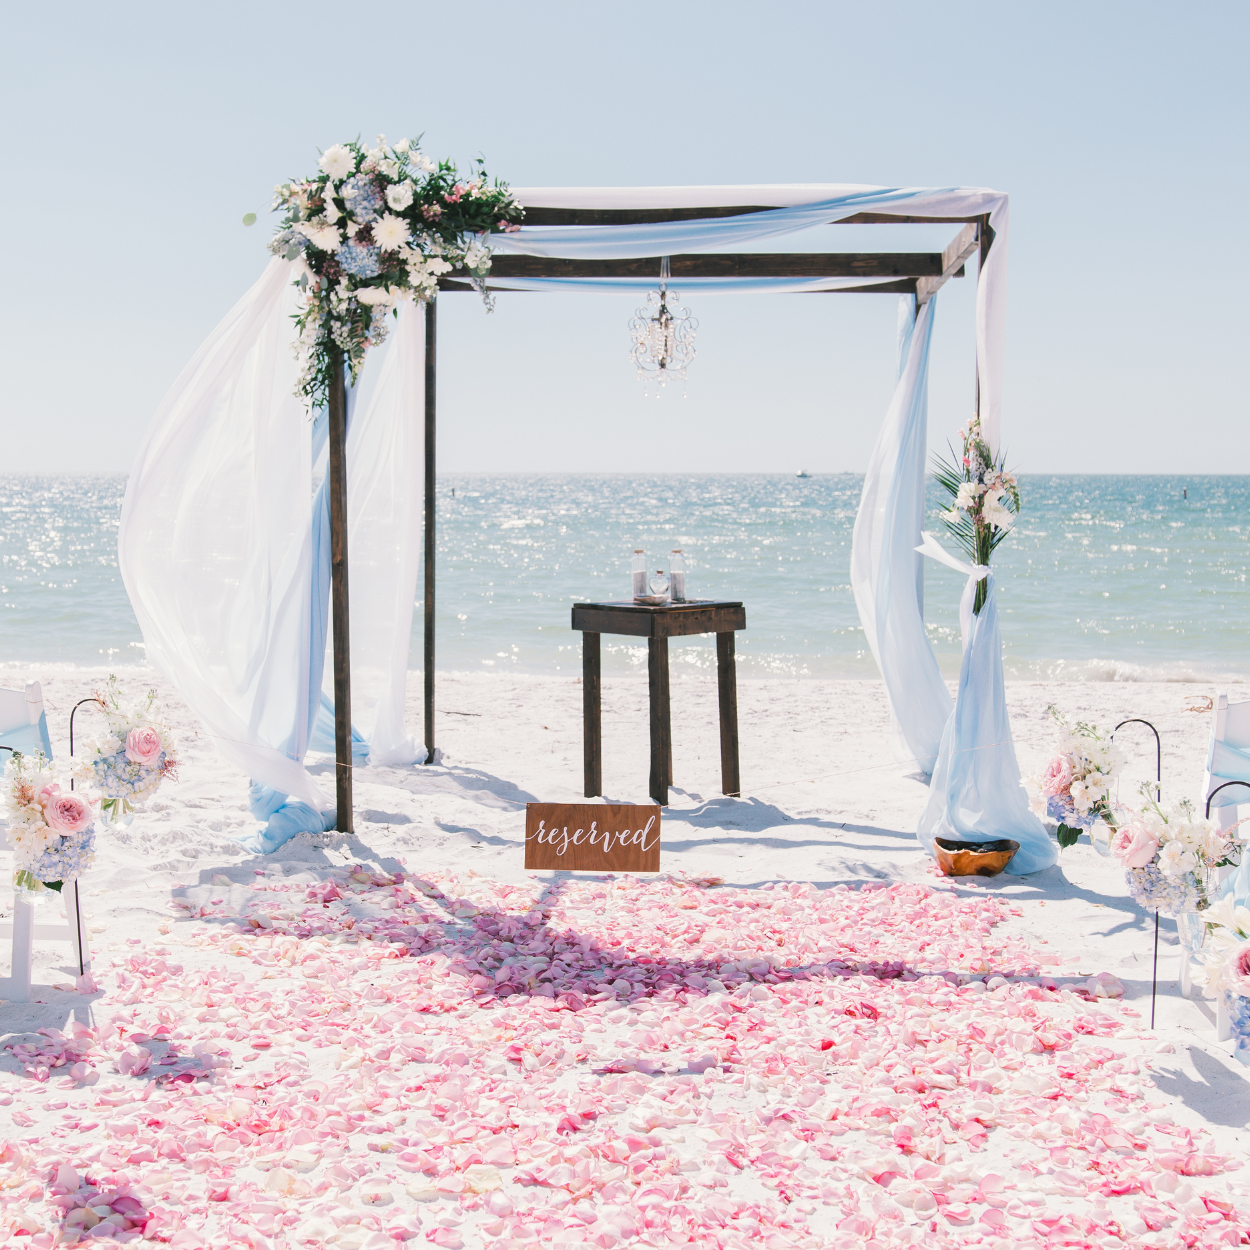 Budget friendly destination weddings by Southern beach weddings